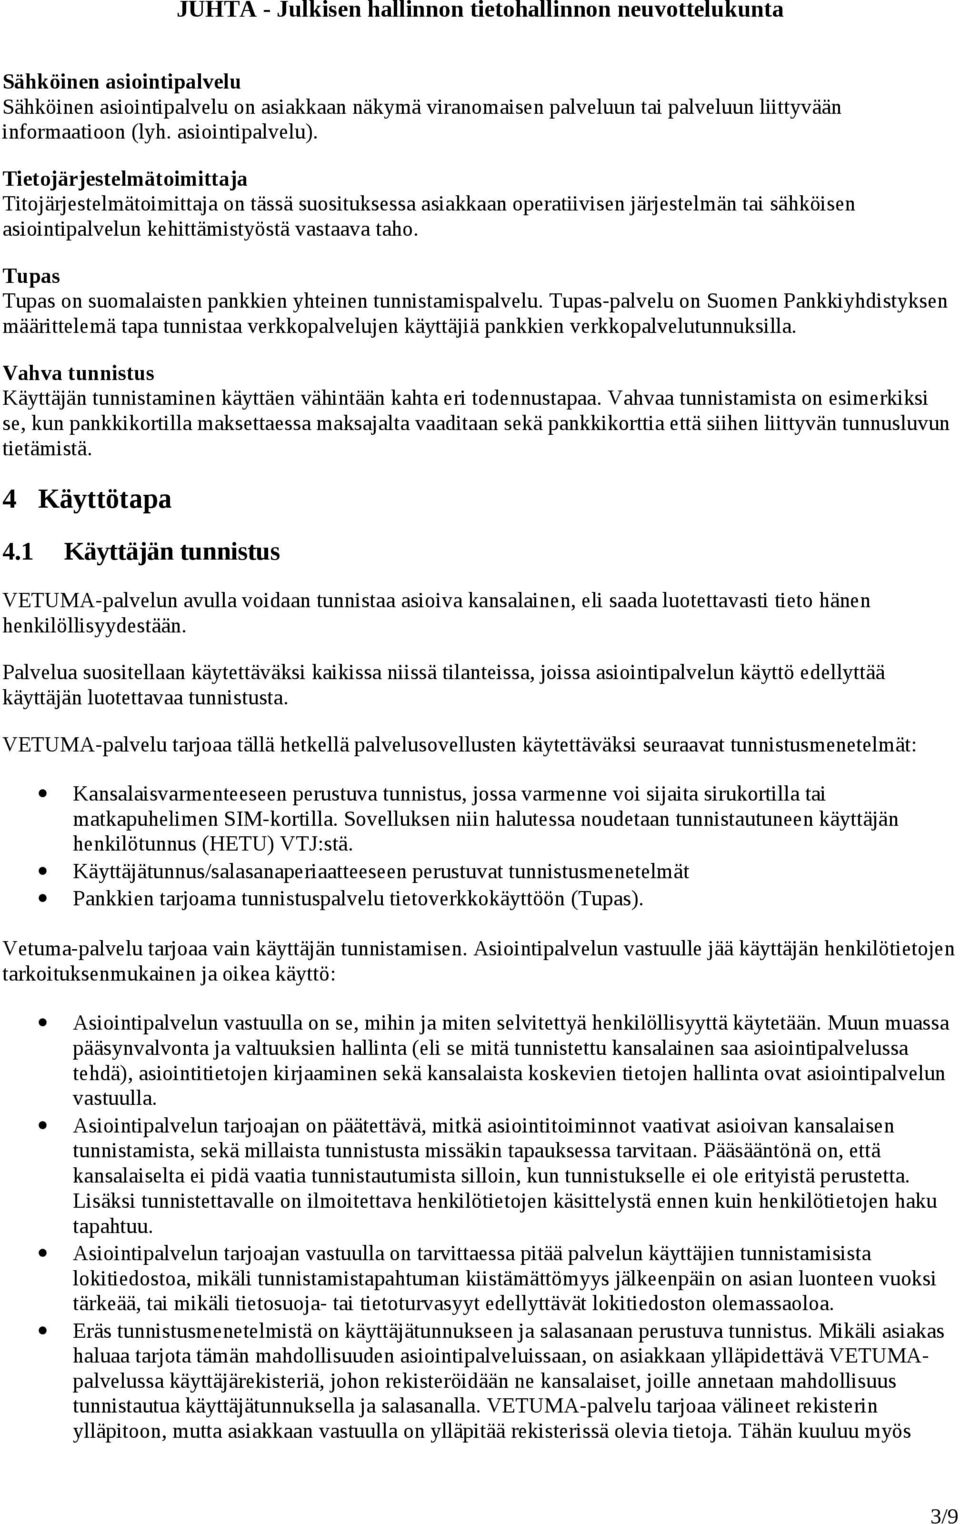 Tupas Tupas on suomalaisten pankkien yhteinen tunnistamispalvelu. Tupas-palvelu on Suomen Pankkiyhdistyksen määrittelemä tapa tunnistaa verkkopalvelujen käyttäjiä pankkien verkkopalvelutunnuksilla.